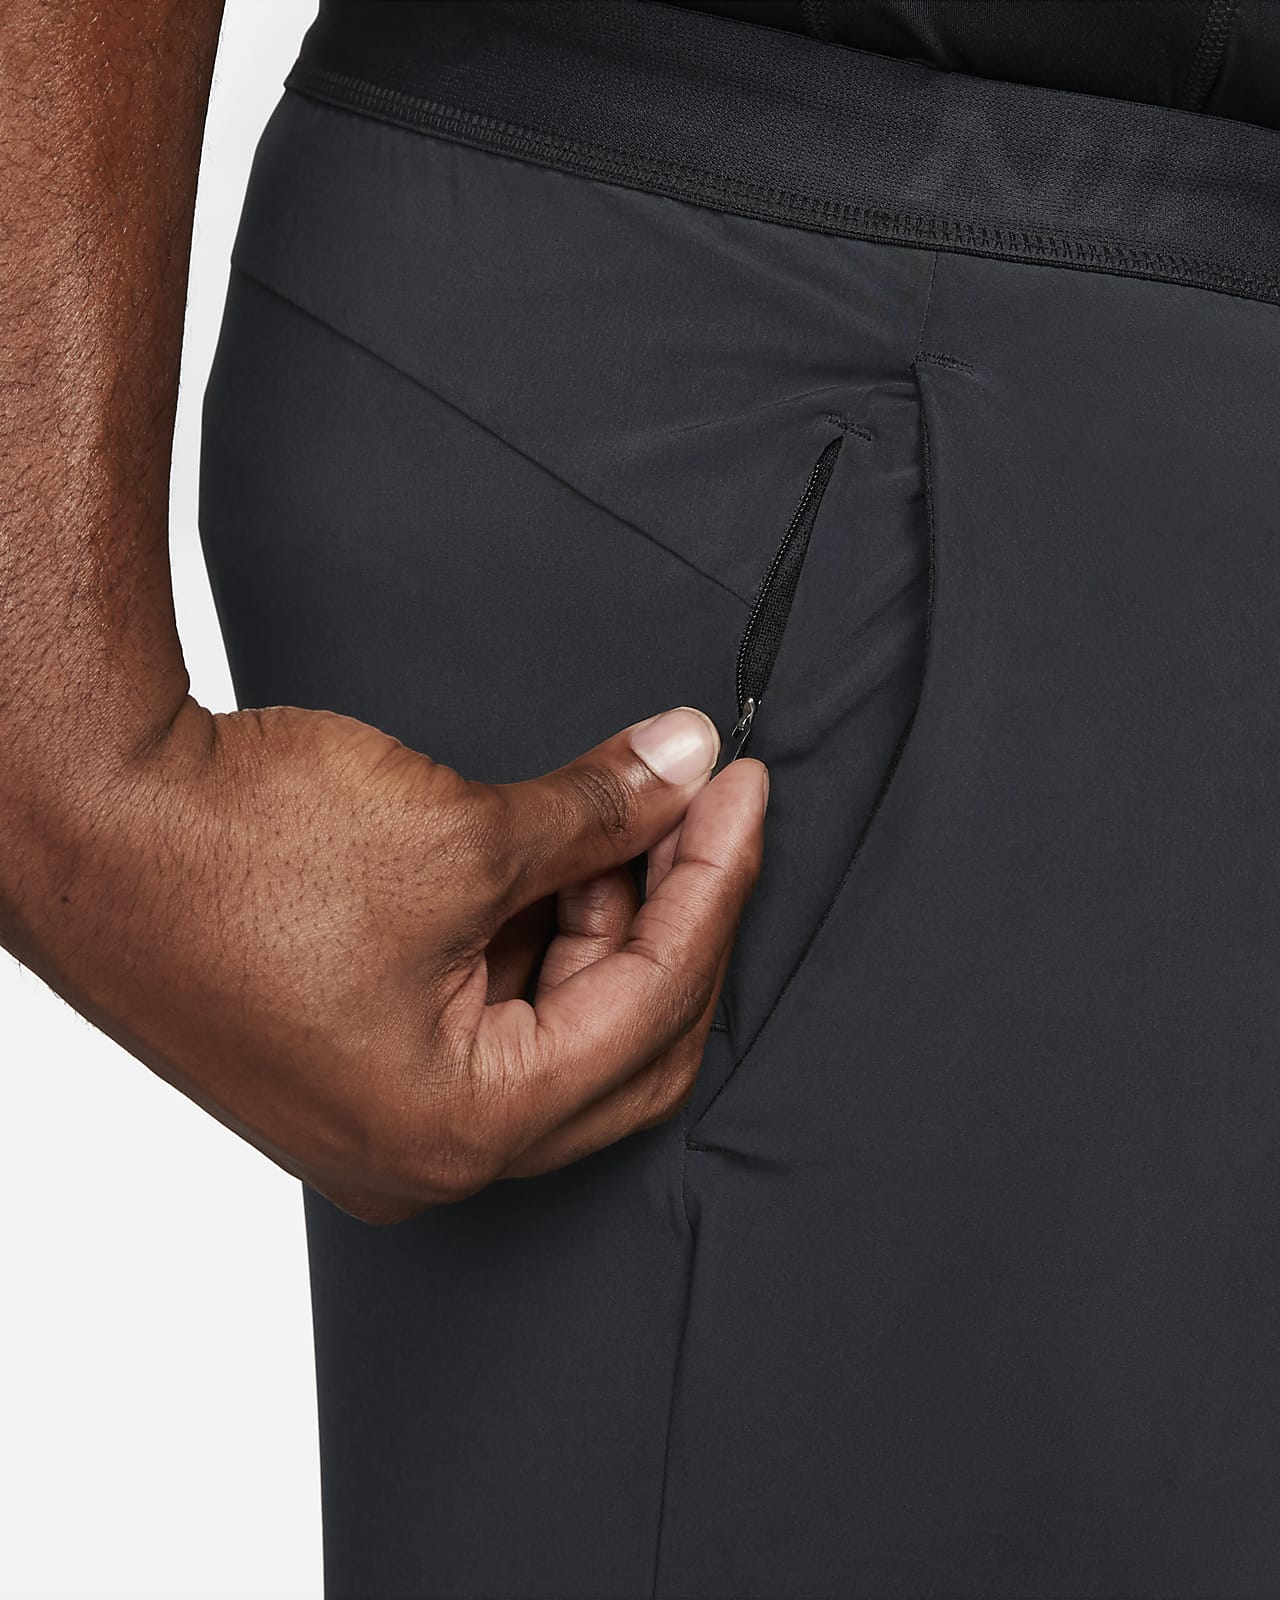 Nike Pro Dri-FIT Vent Max Men's Training Pants | lupon.gov.ph